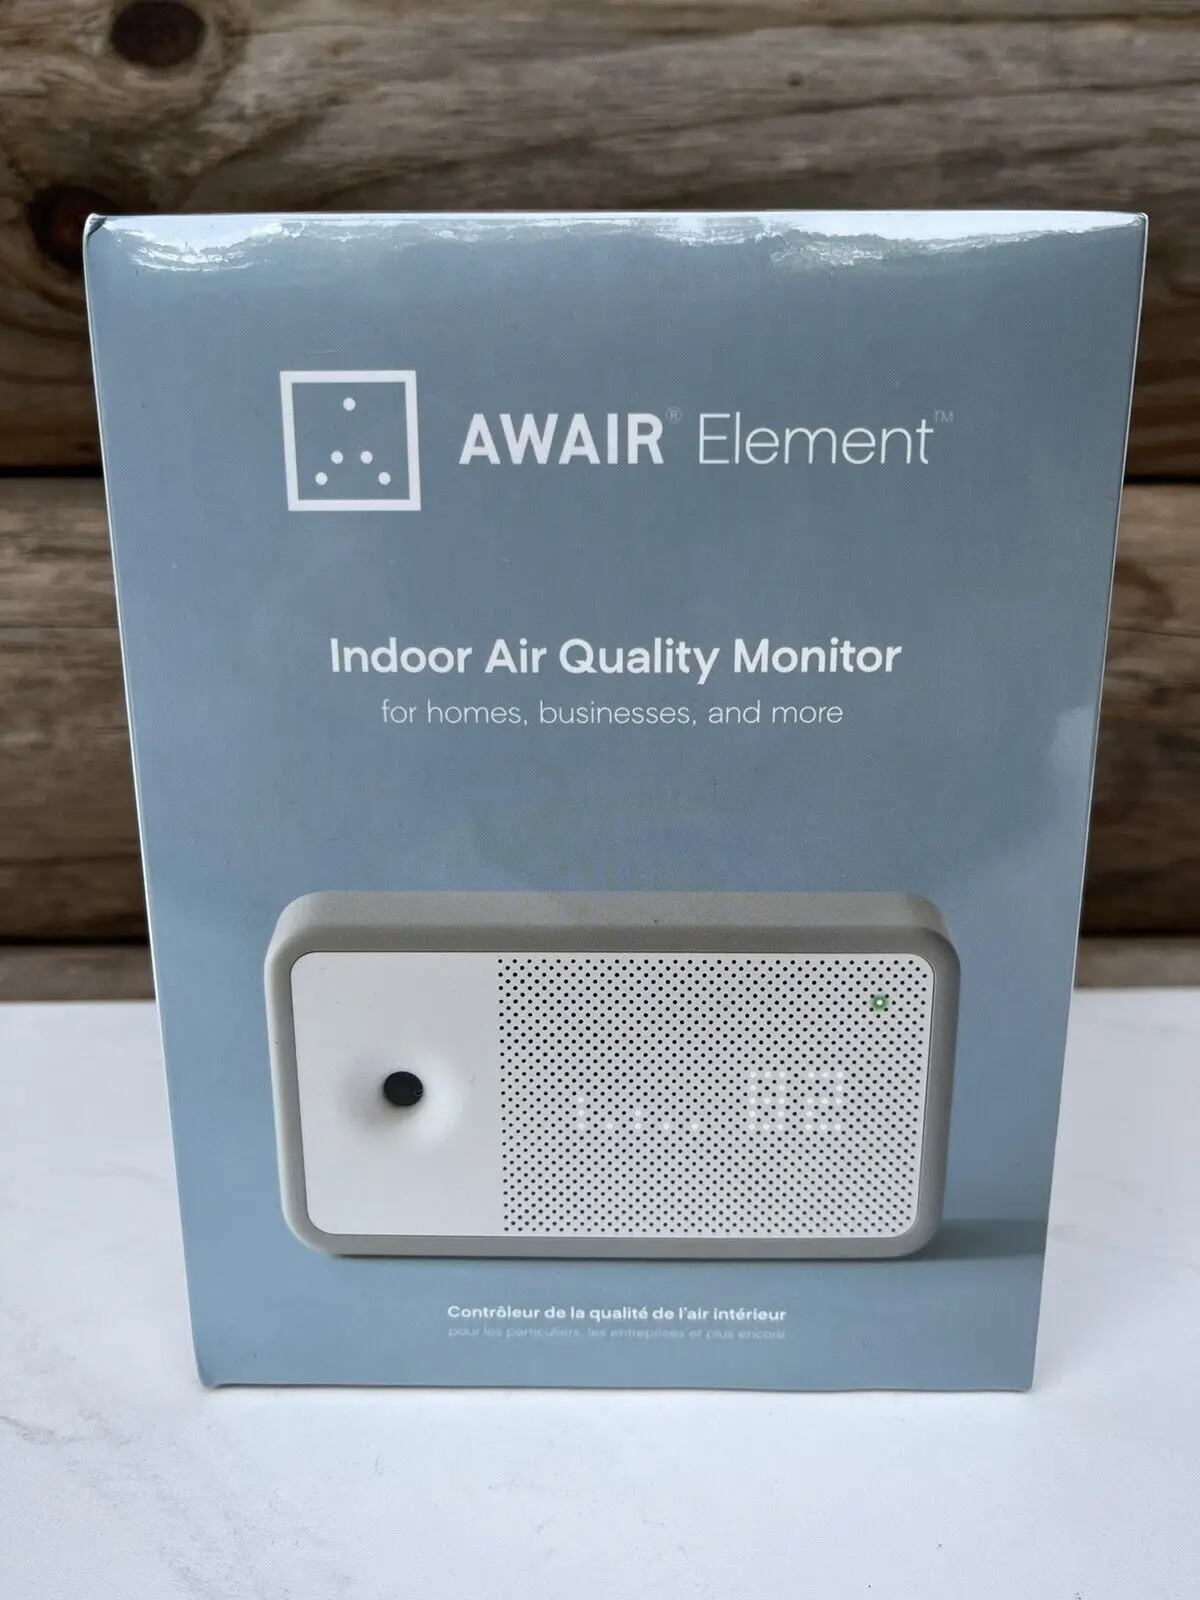 

Лето 50% скидка купить 5 получить 3 бесплатно Awair Element монитор качества воздуха в помещении